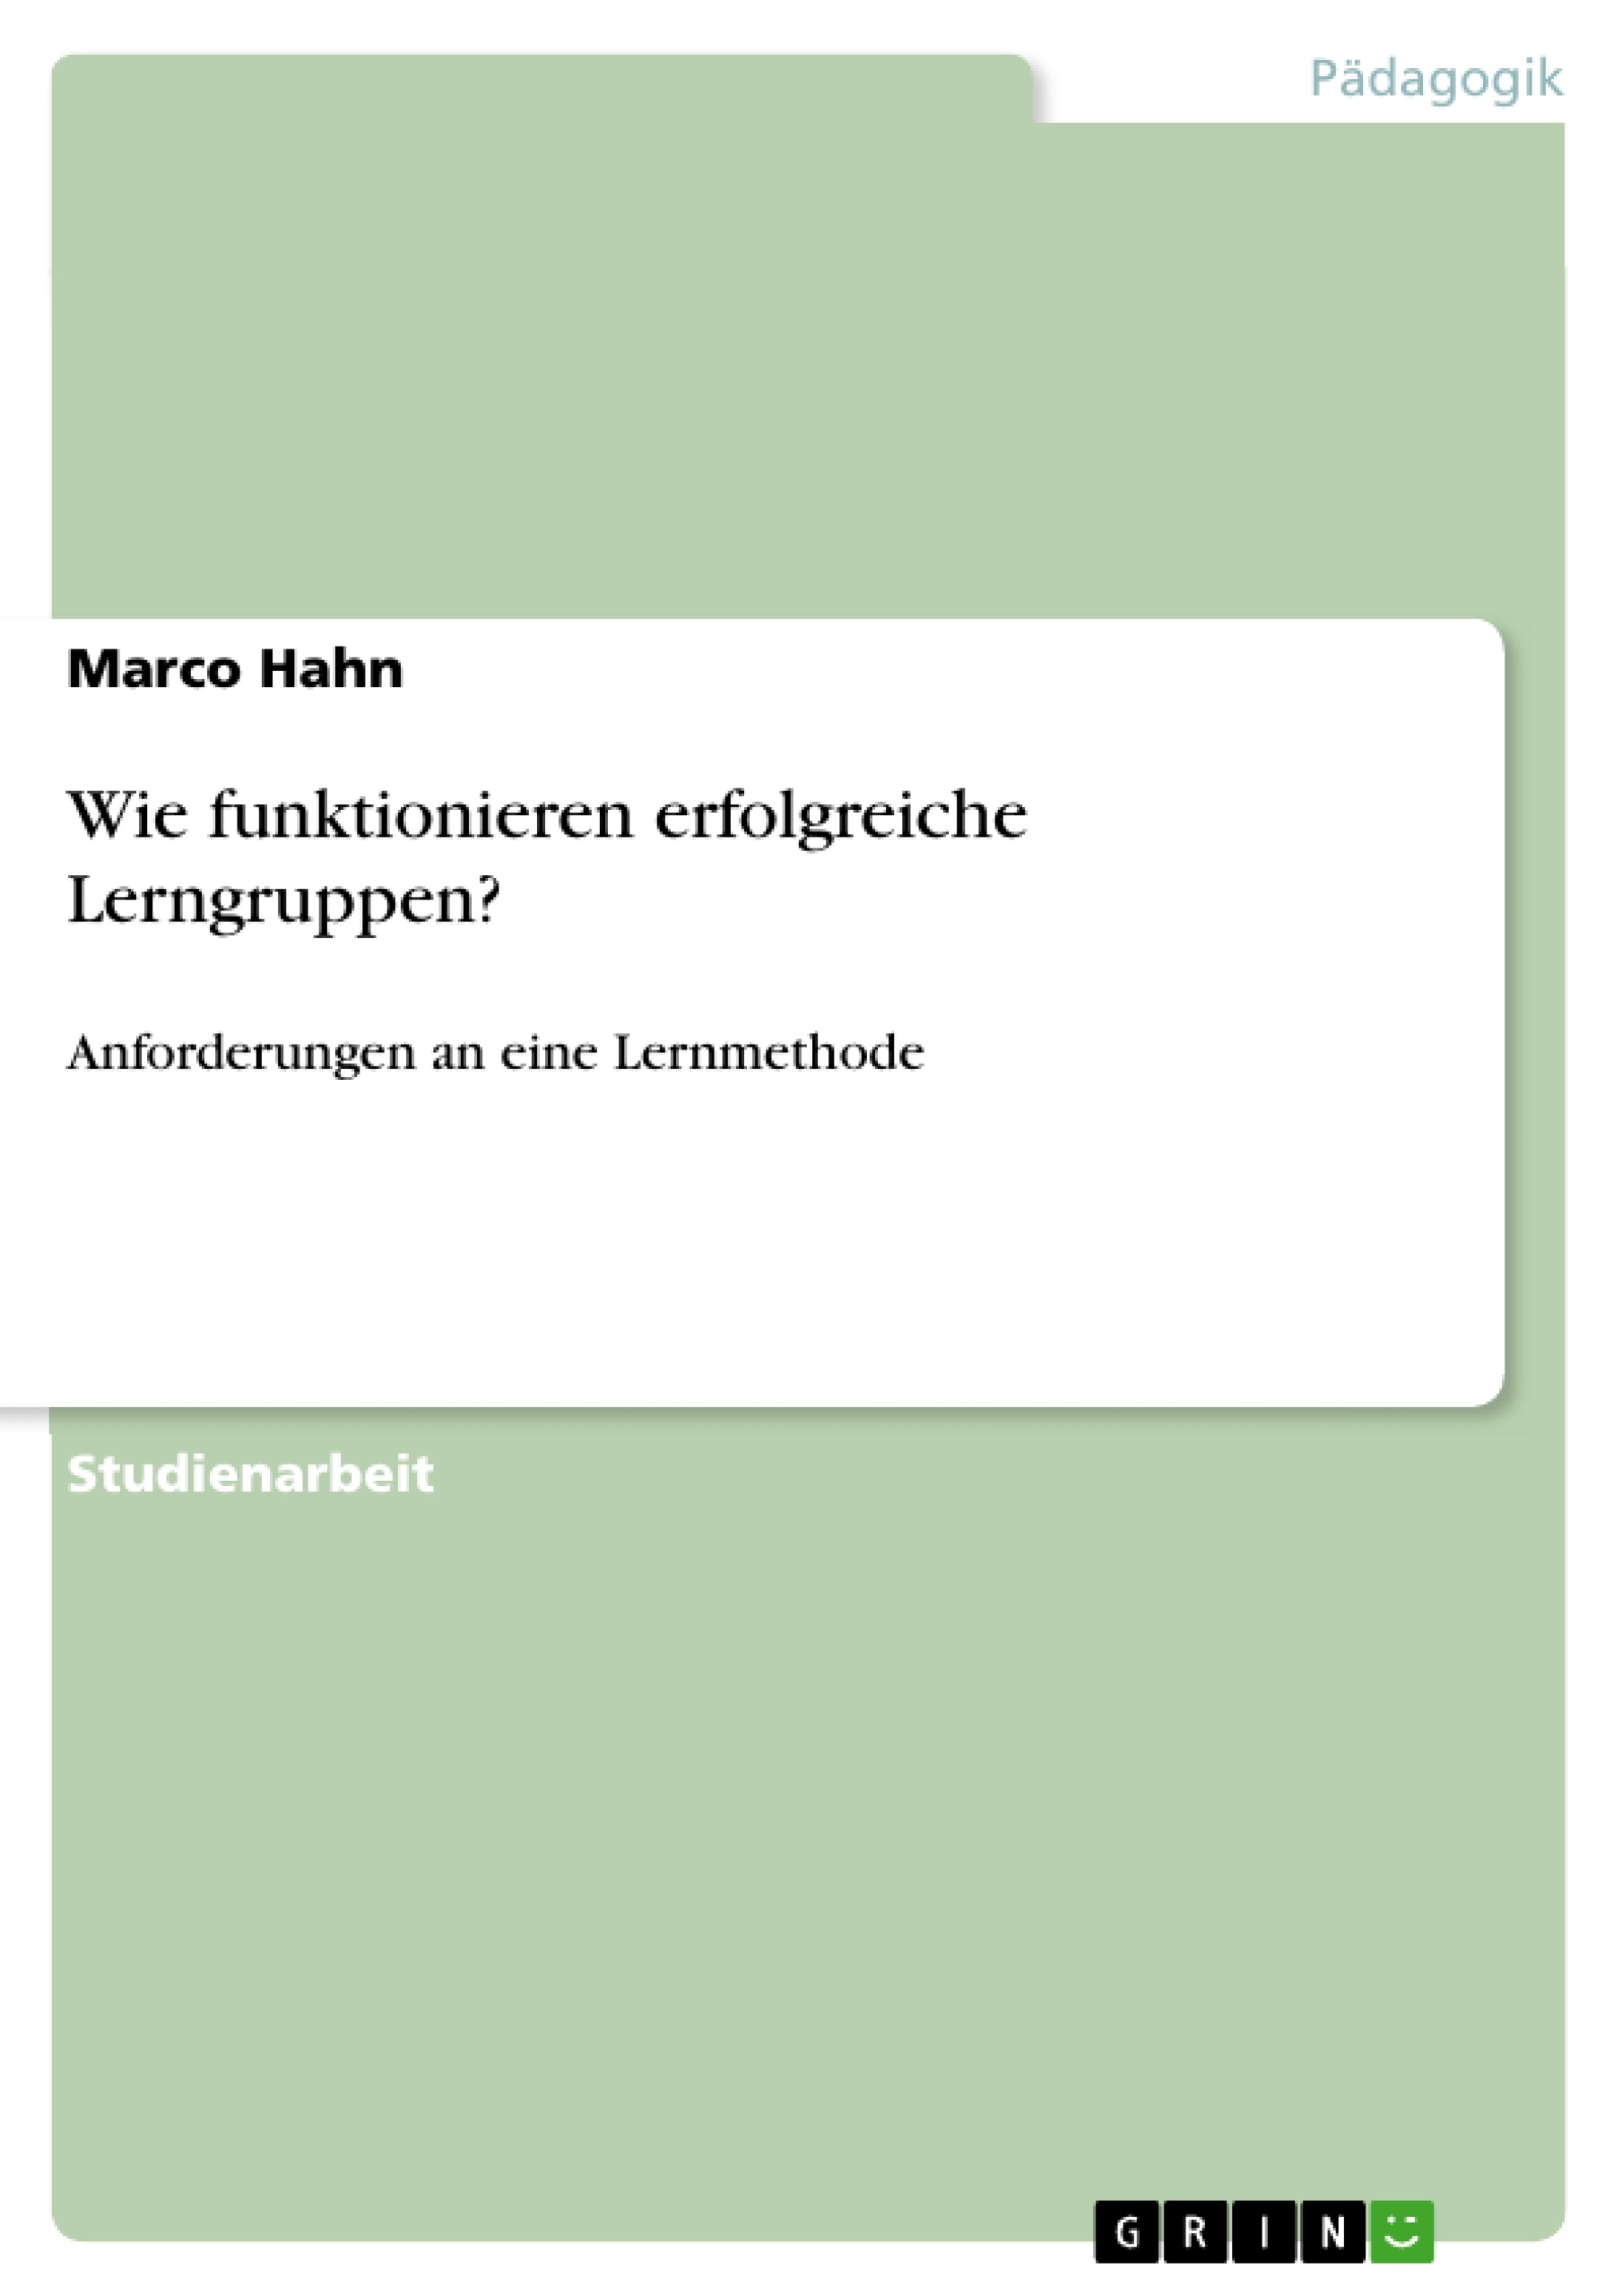 Título: Lerngruppen als Lernmethode / Anforderungen an erfolgreiche Lerngruppen